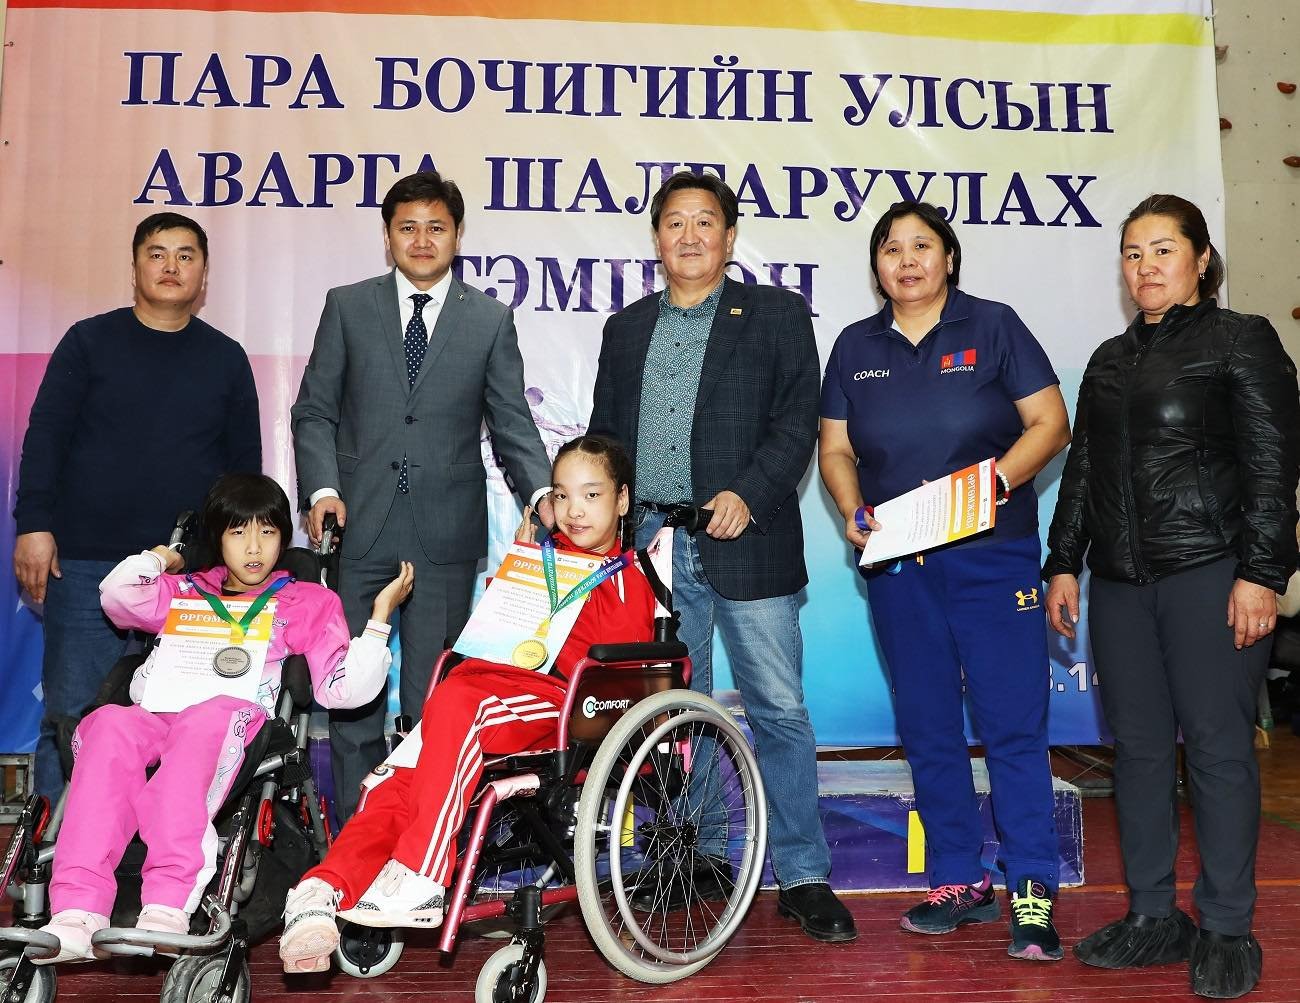 ХААН Банк сан Монголын Парабочигийн спортыг 5 дахь жилдээ дэмжин ажиллаж байна